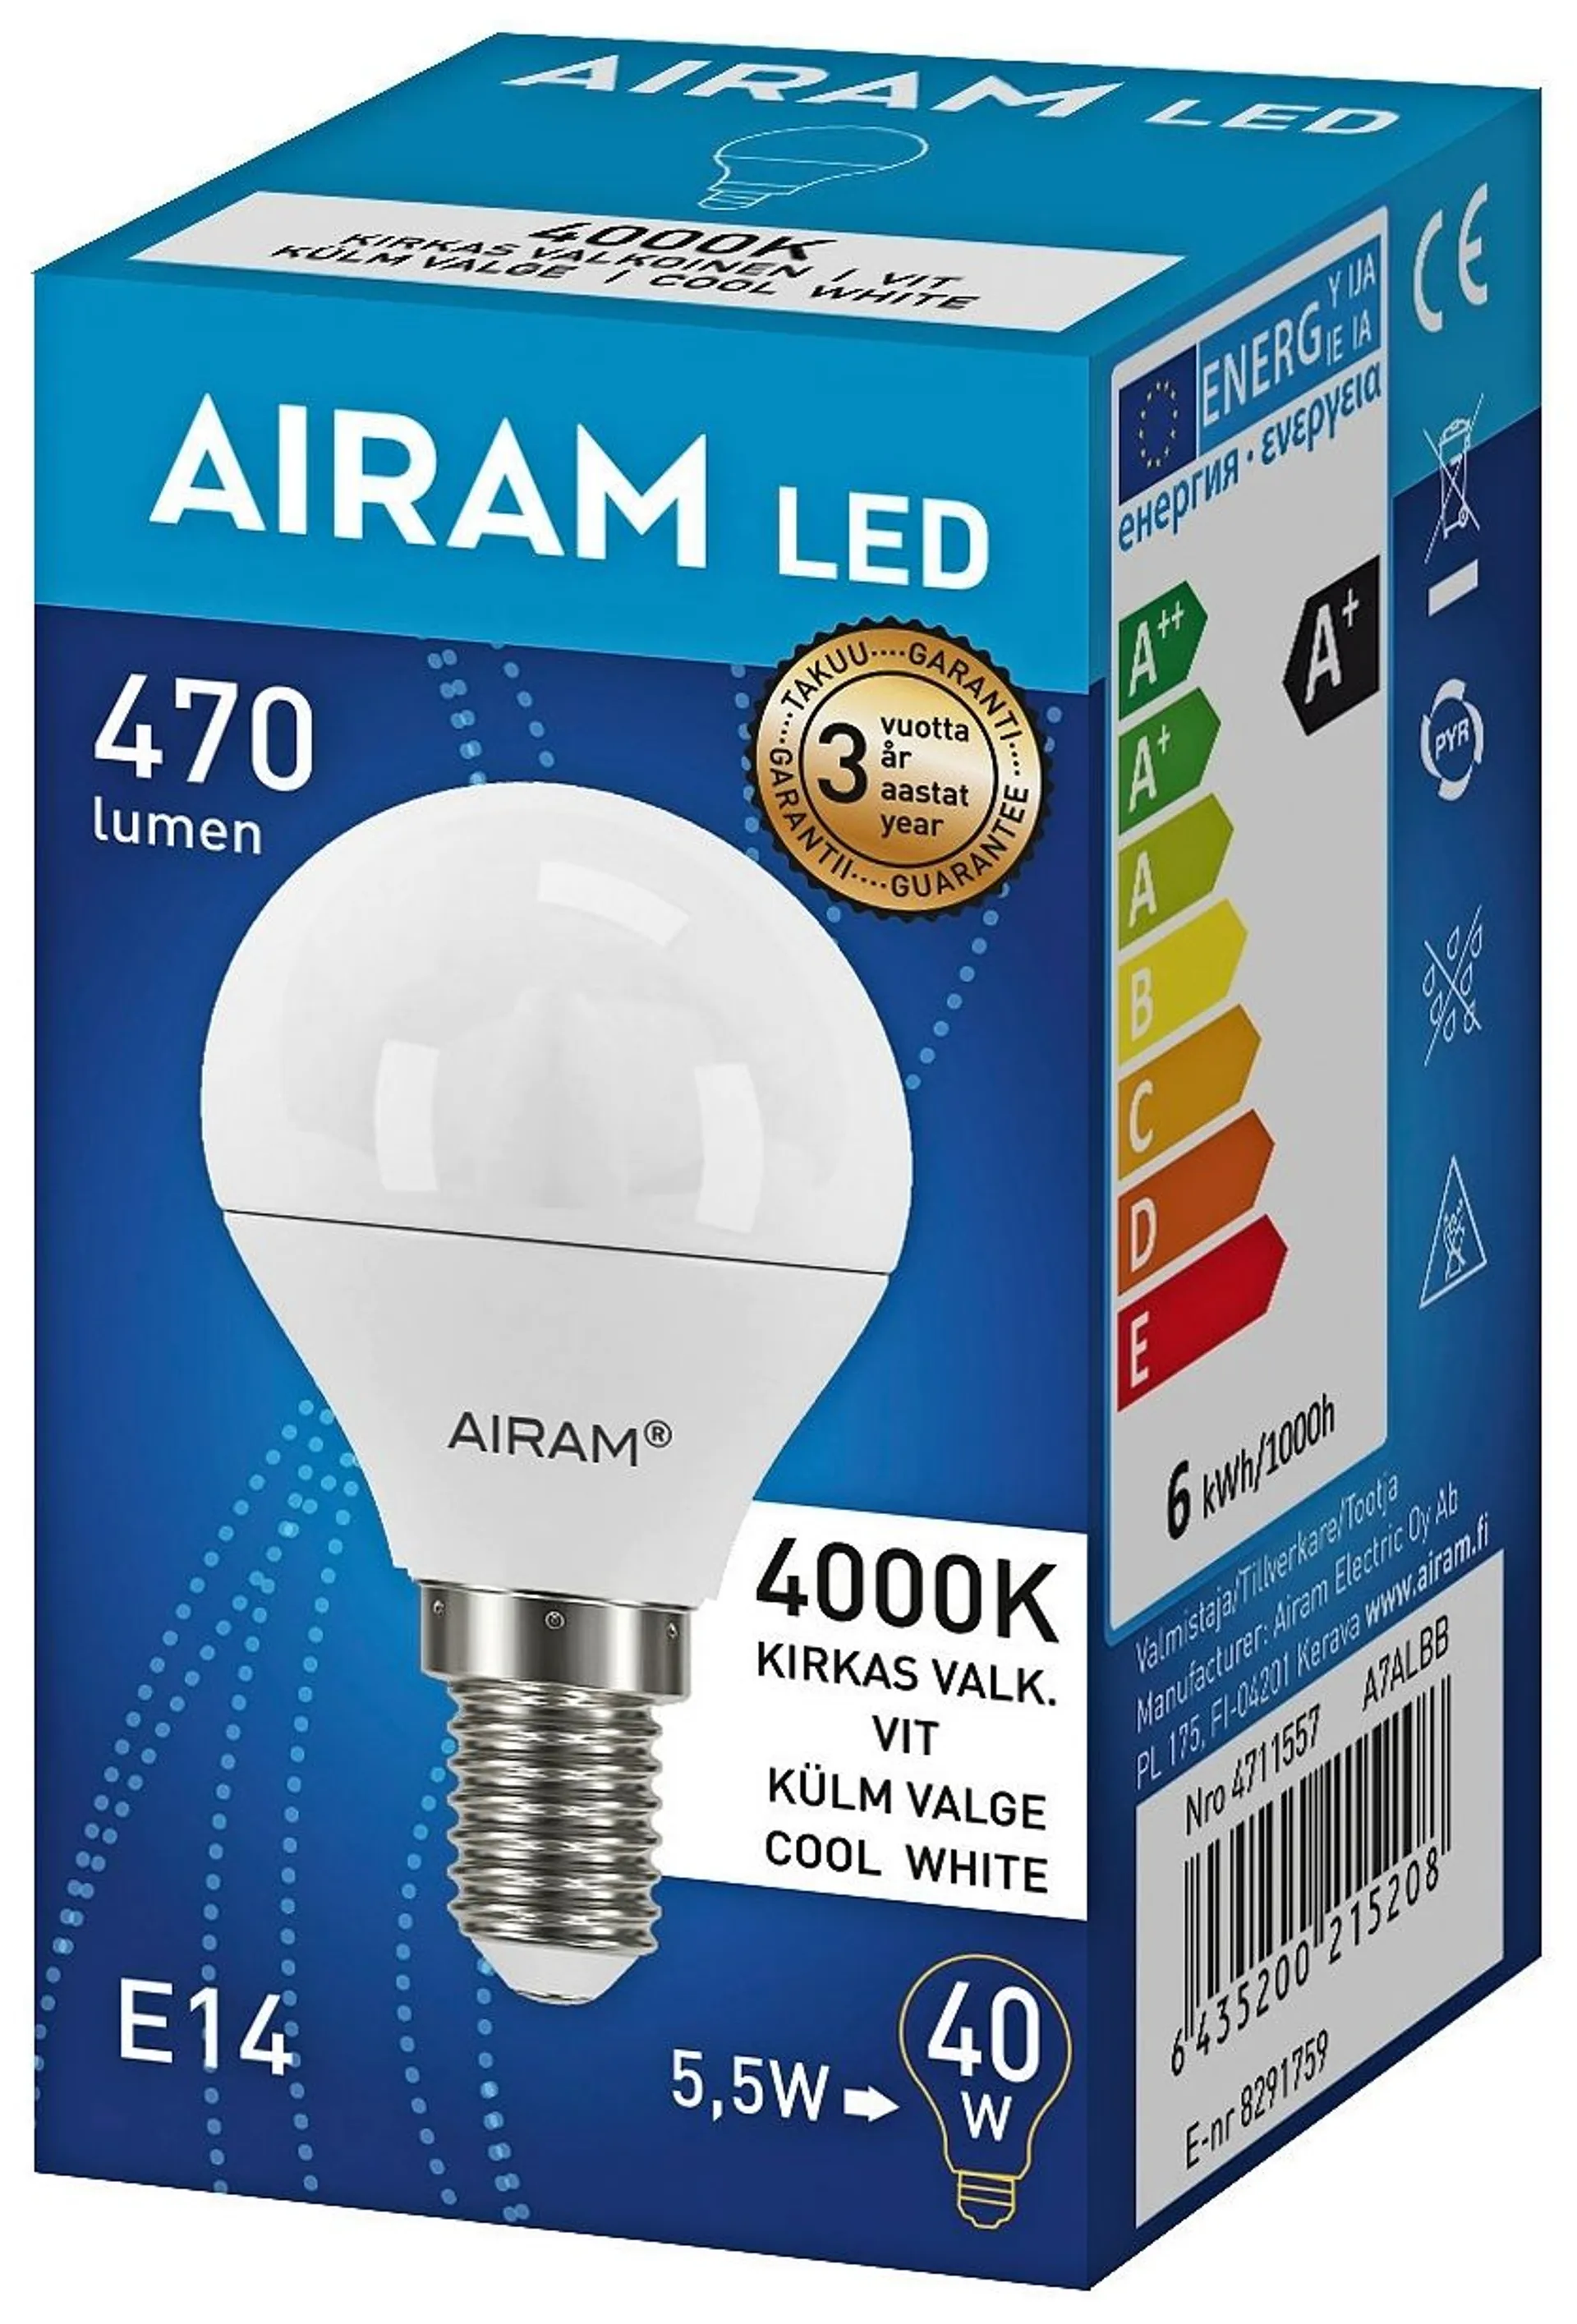 Airam LED 4,9W/840 E14 mainos 500lm - 2